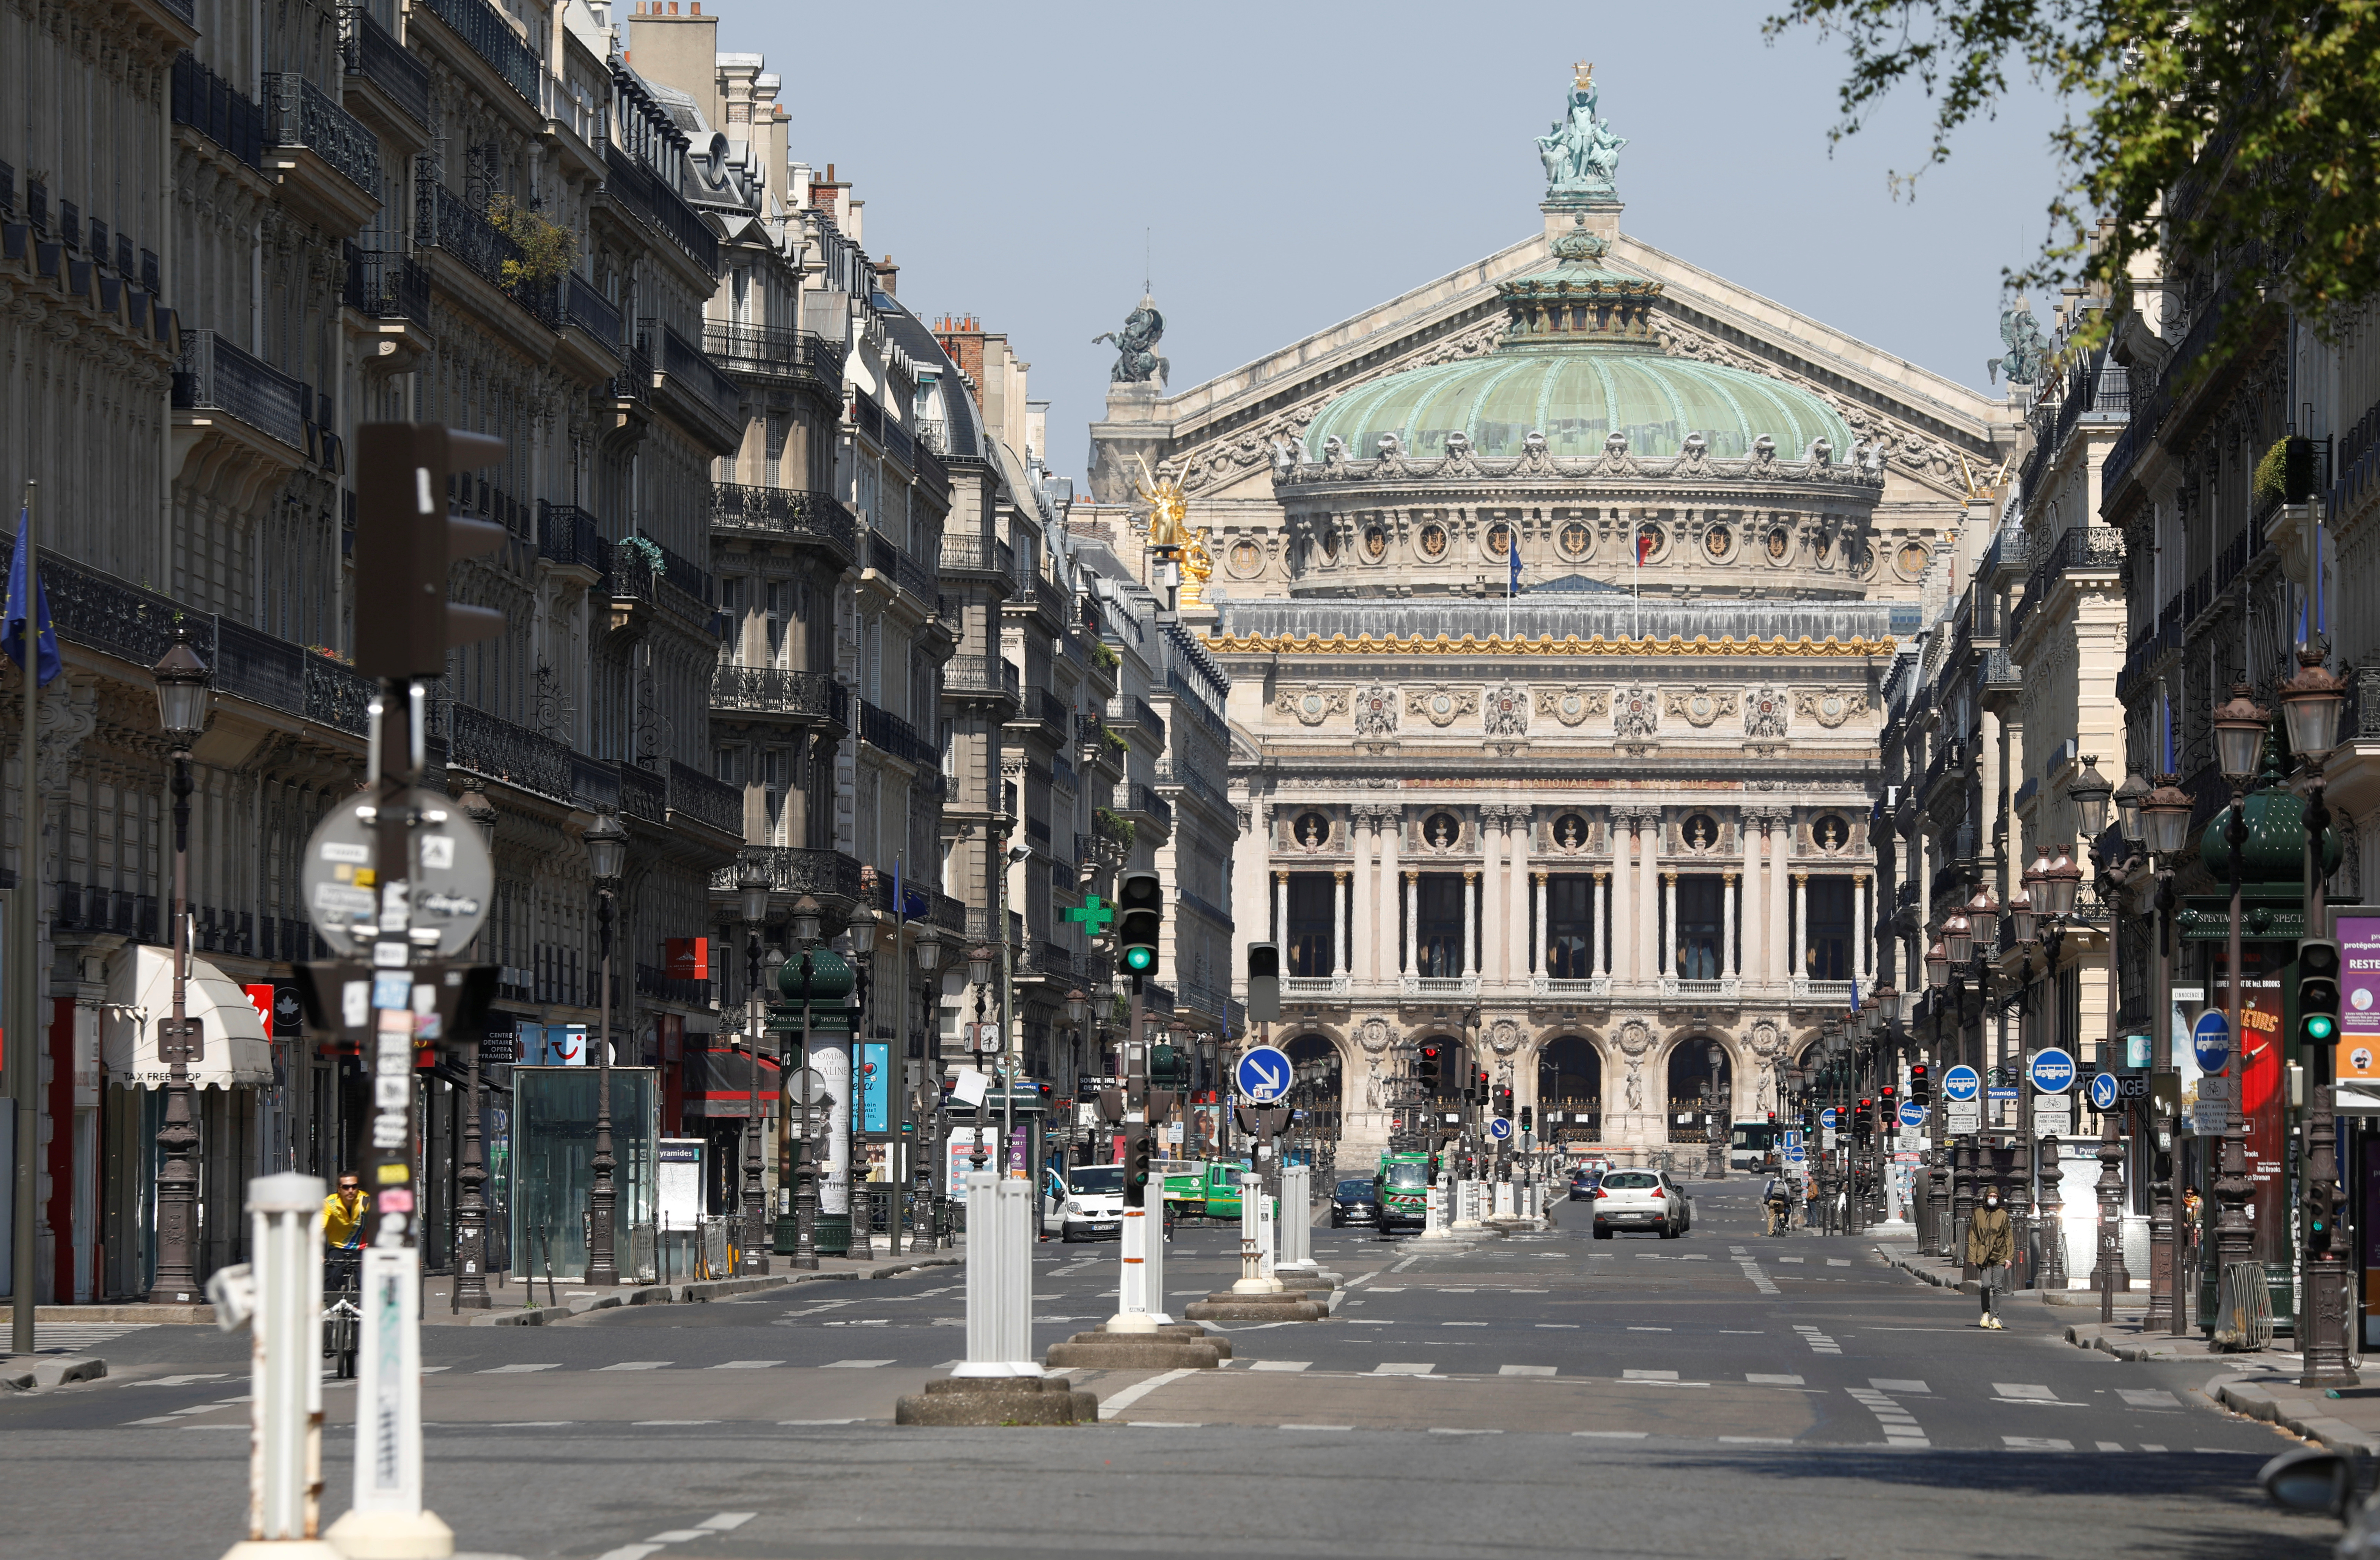 Imponente vista urbana de la Avenue de l'Opera, con la Ópera de París al fondo (Foto: REUTERS/Charles Platiau)